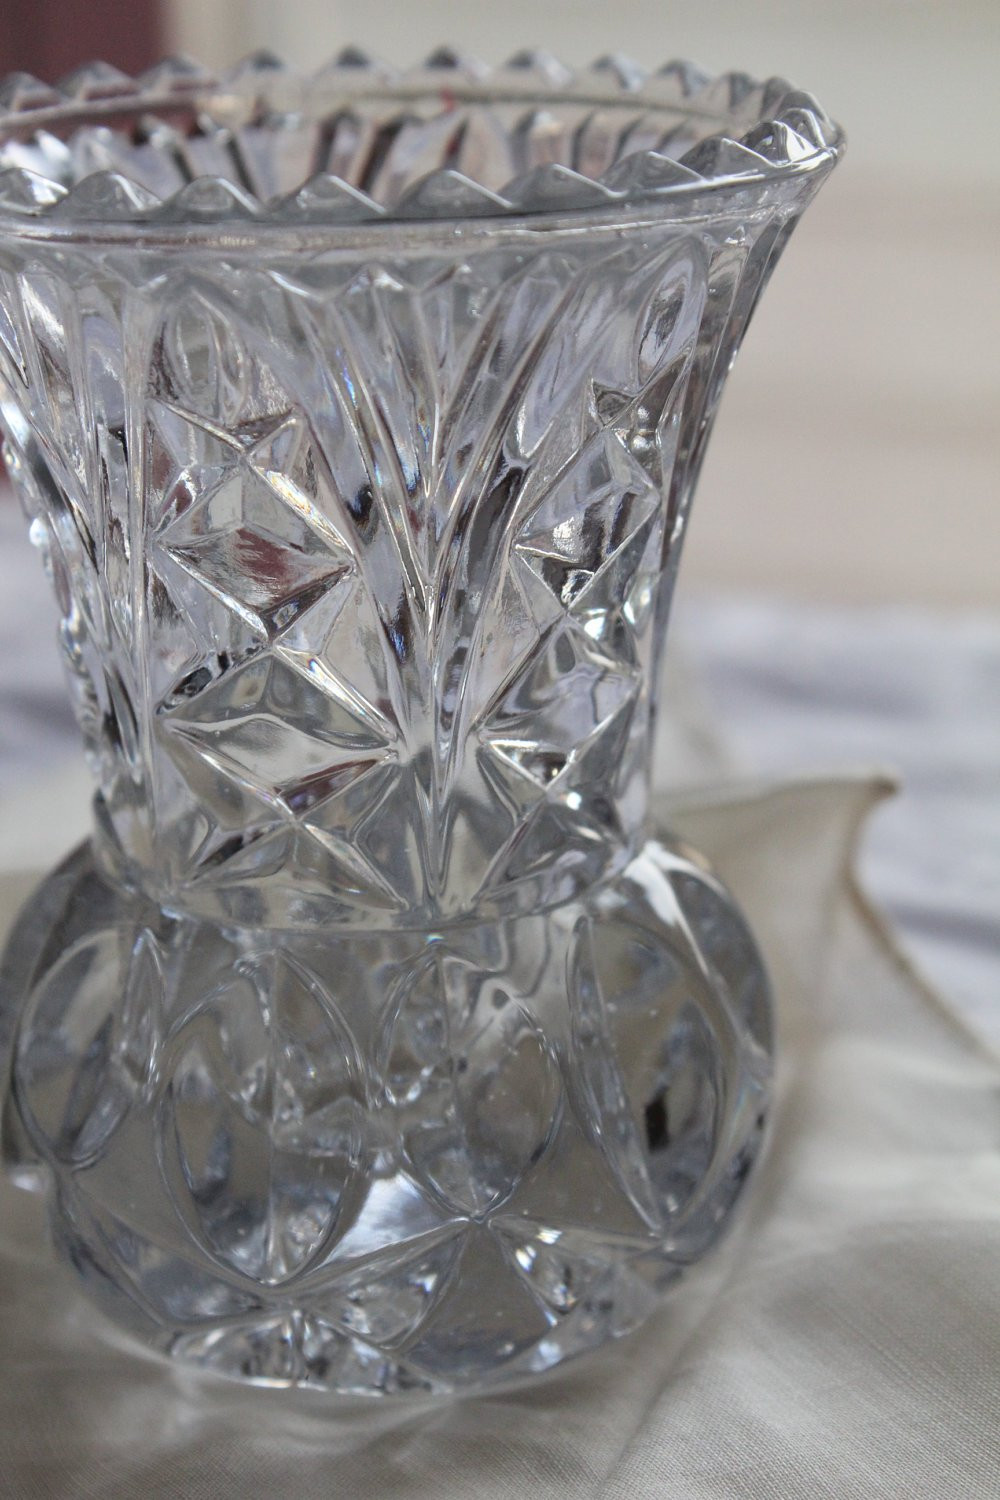 12 Elegant Vintage Lead Crystal Vase 2024 free download vintage lead crystal vase of princess house two mini lead crystal bud vases toothpick within dc29fc294c28ezoom